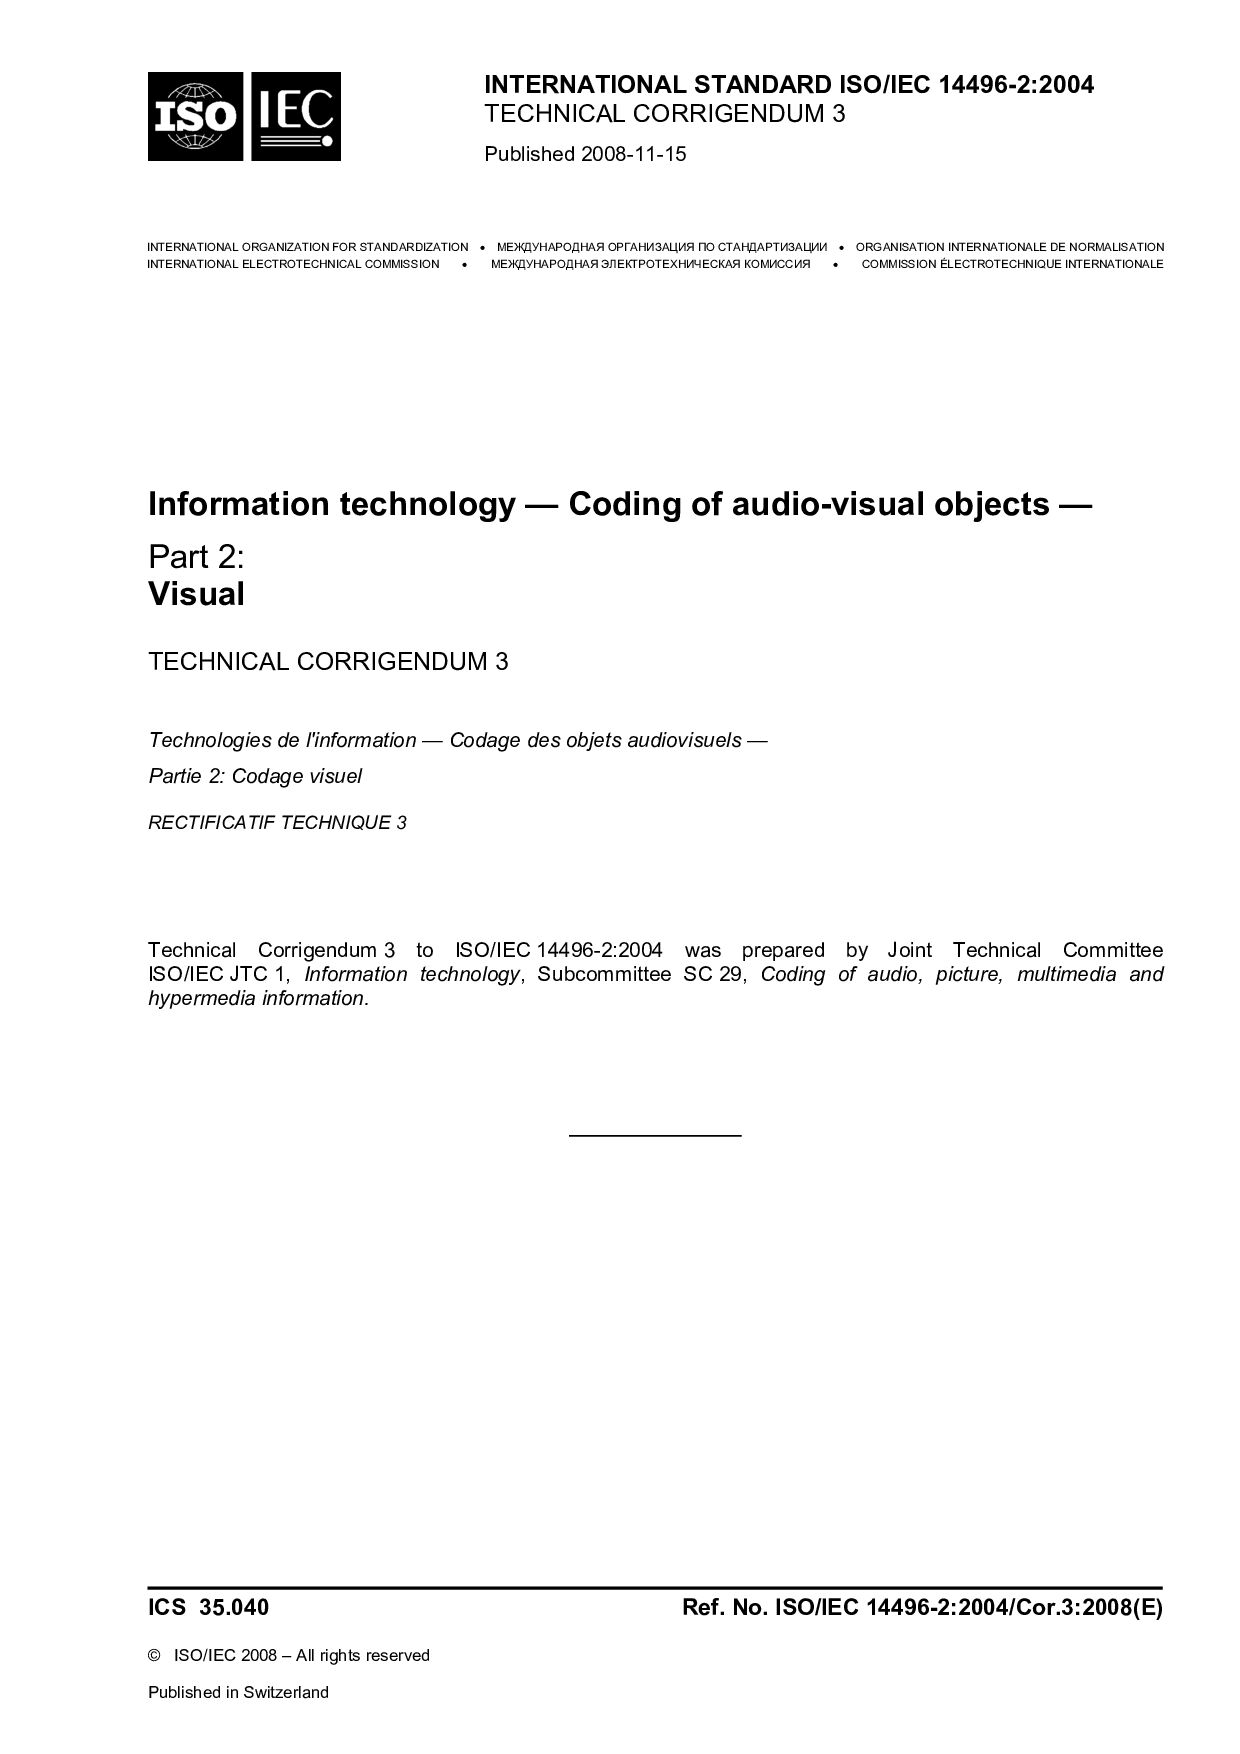 ISO/IEC 14496-2:2004/Cor 3:2008封面图